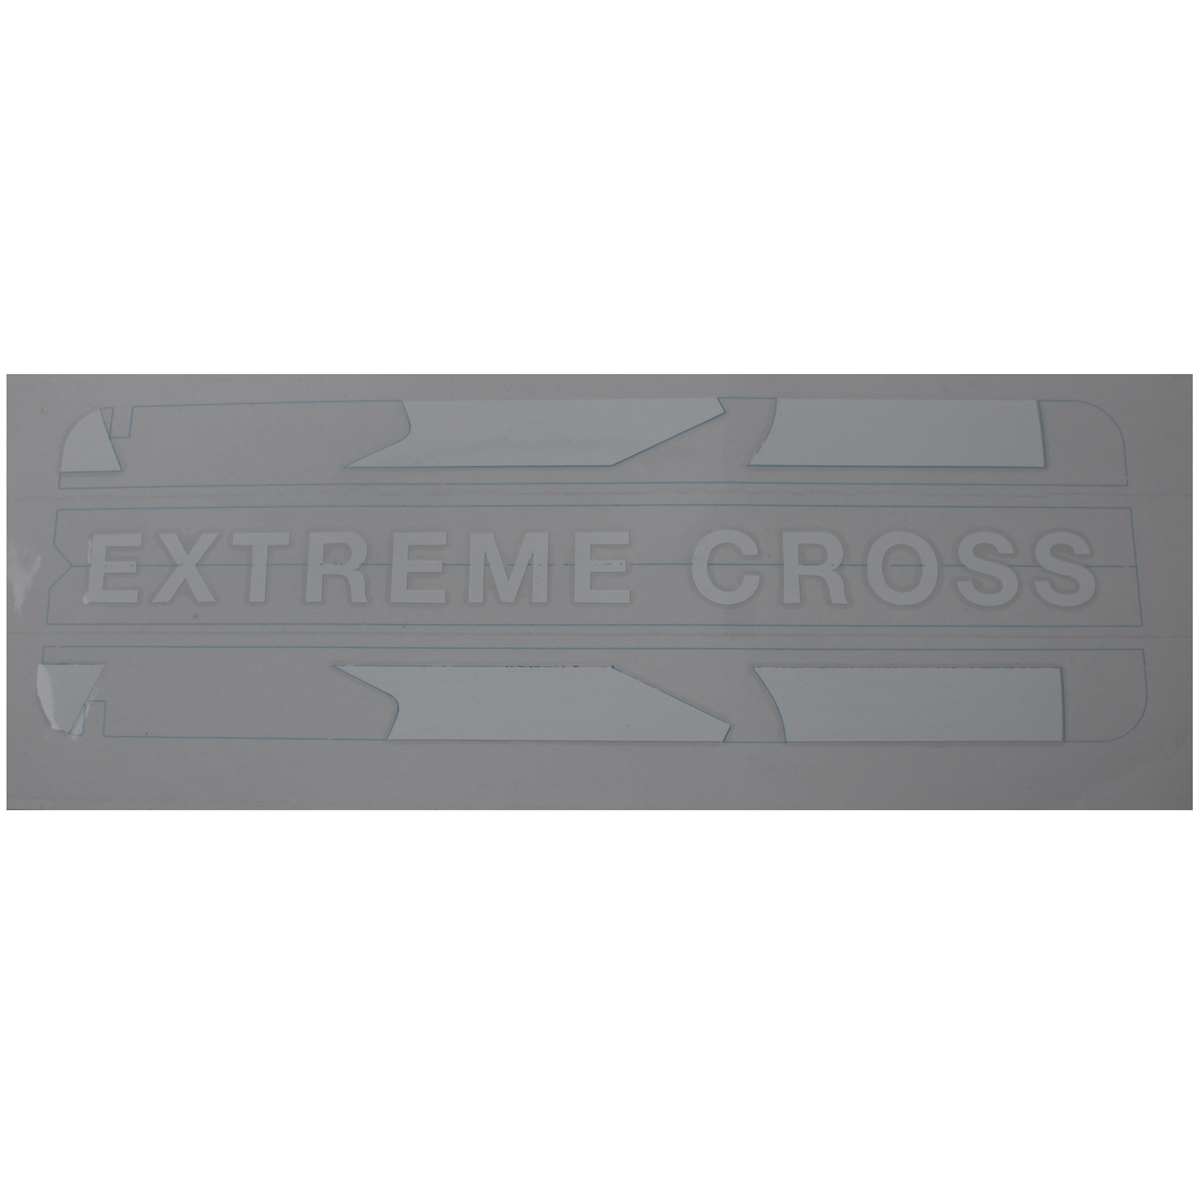 Autocollant cache batterie Extreme Cross blanc